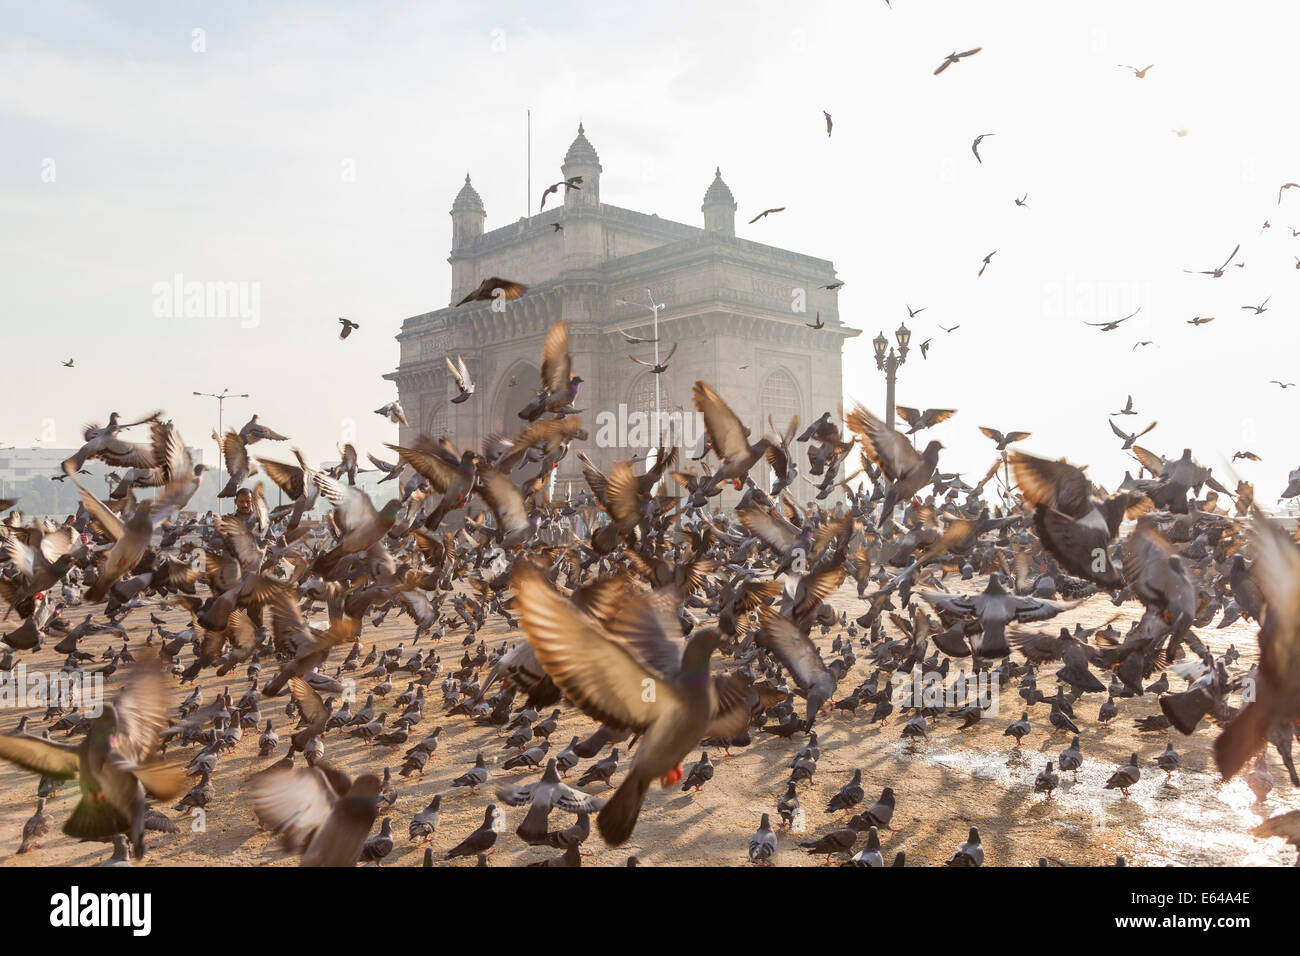 Les pigeons, porte de l'Inde, Colaba, Mumbai (Bombay), Inde Banque D'Images